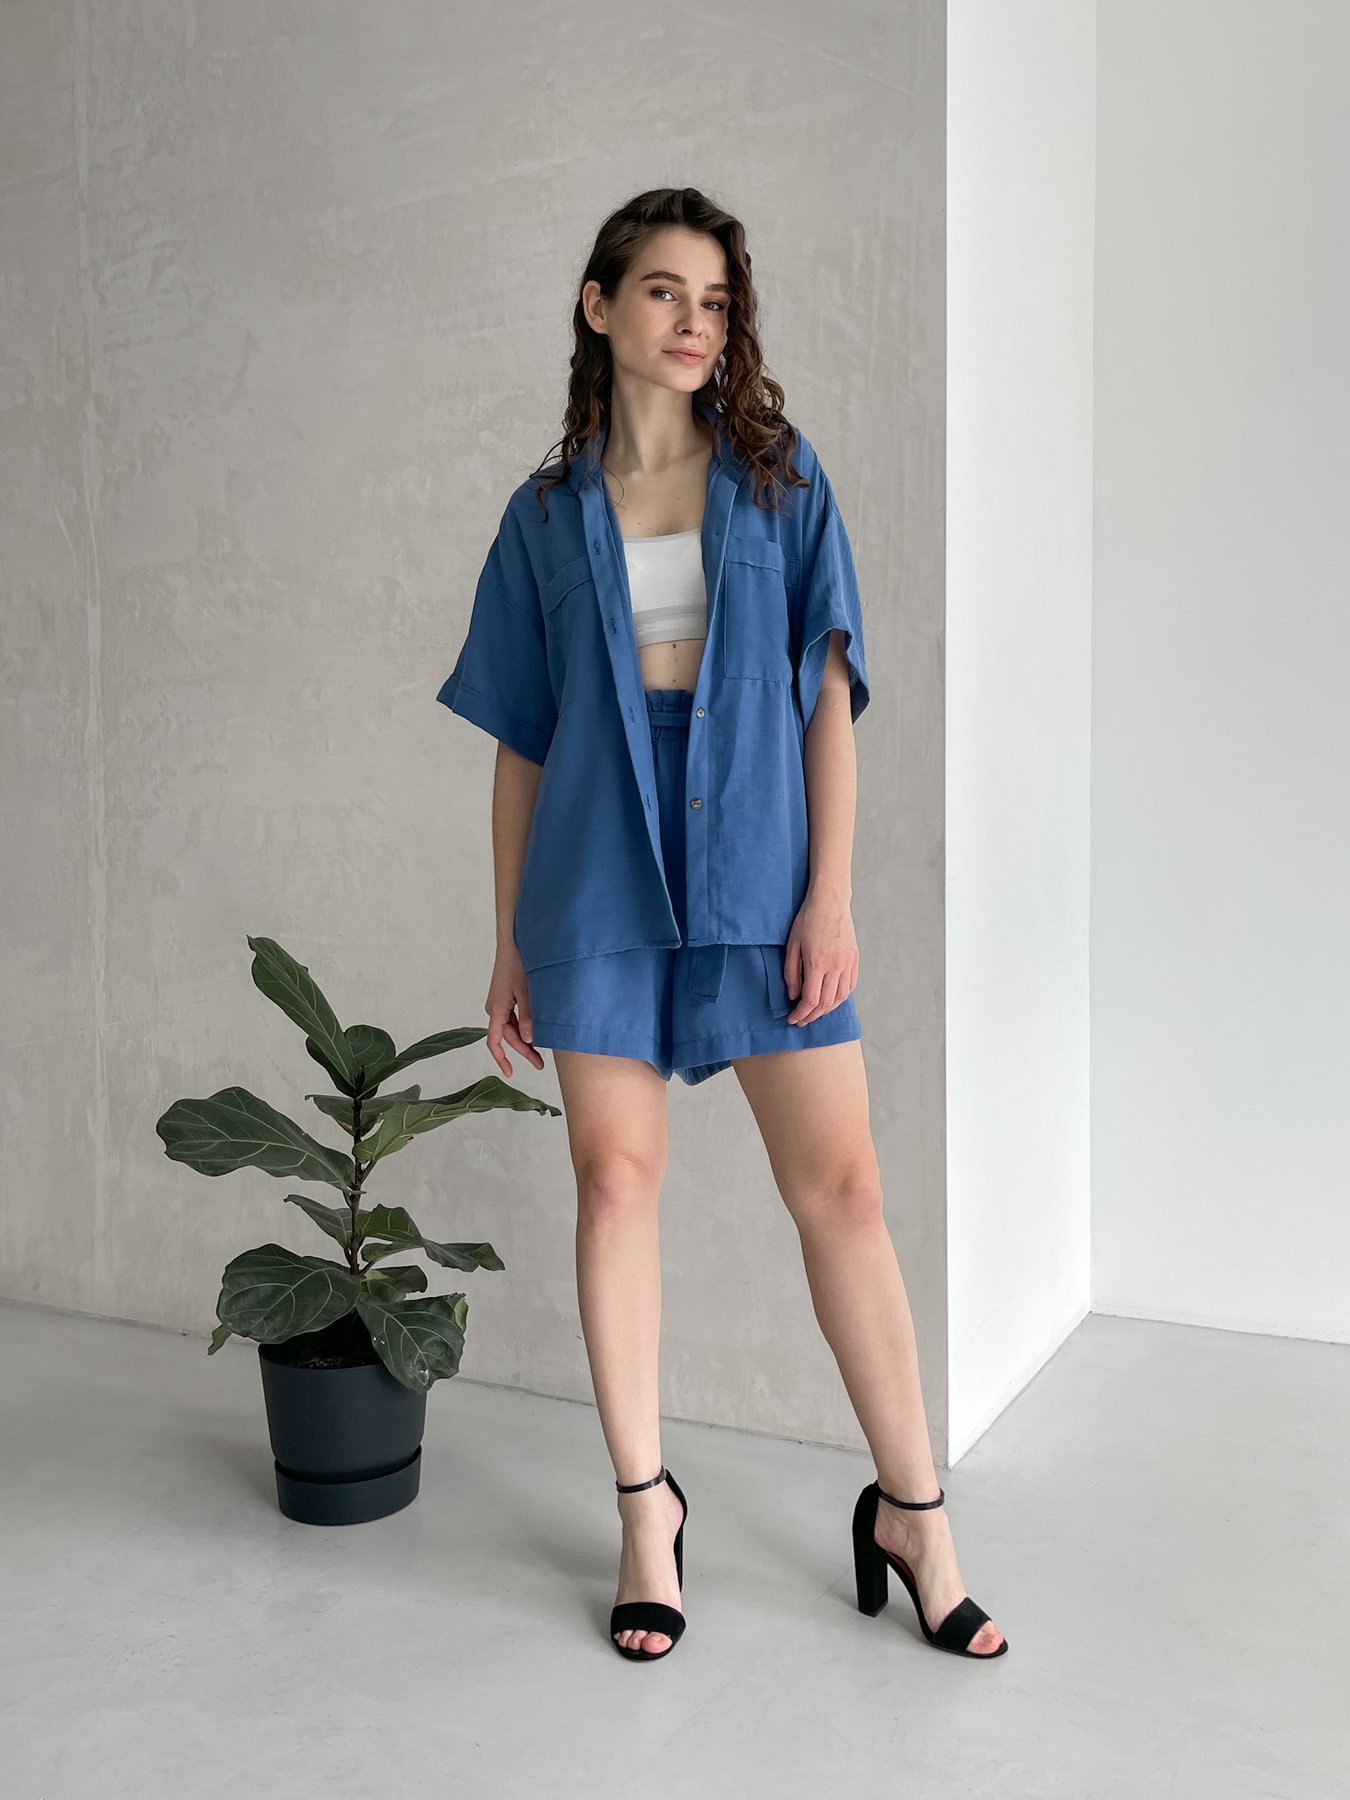 Купить Женский костюм с шортами бермудами и рубашкой из льна синий Merlini Альба 100000563, размер 46-48 в интернет-магазине